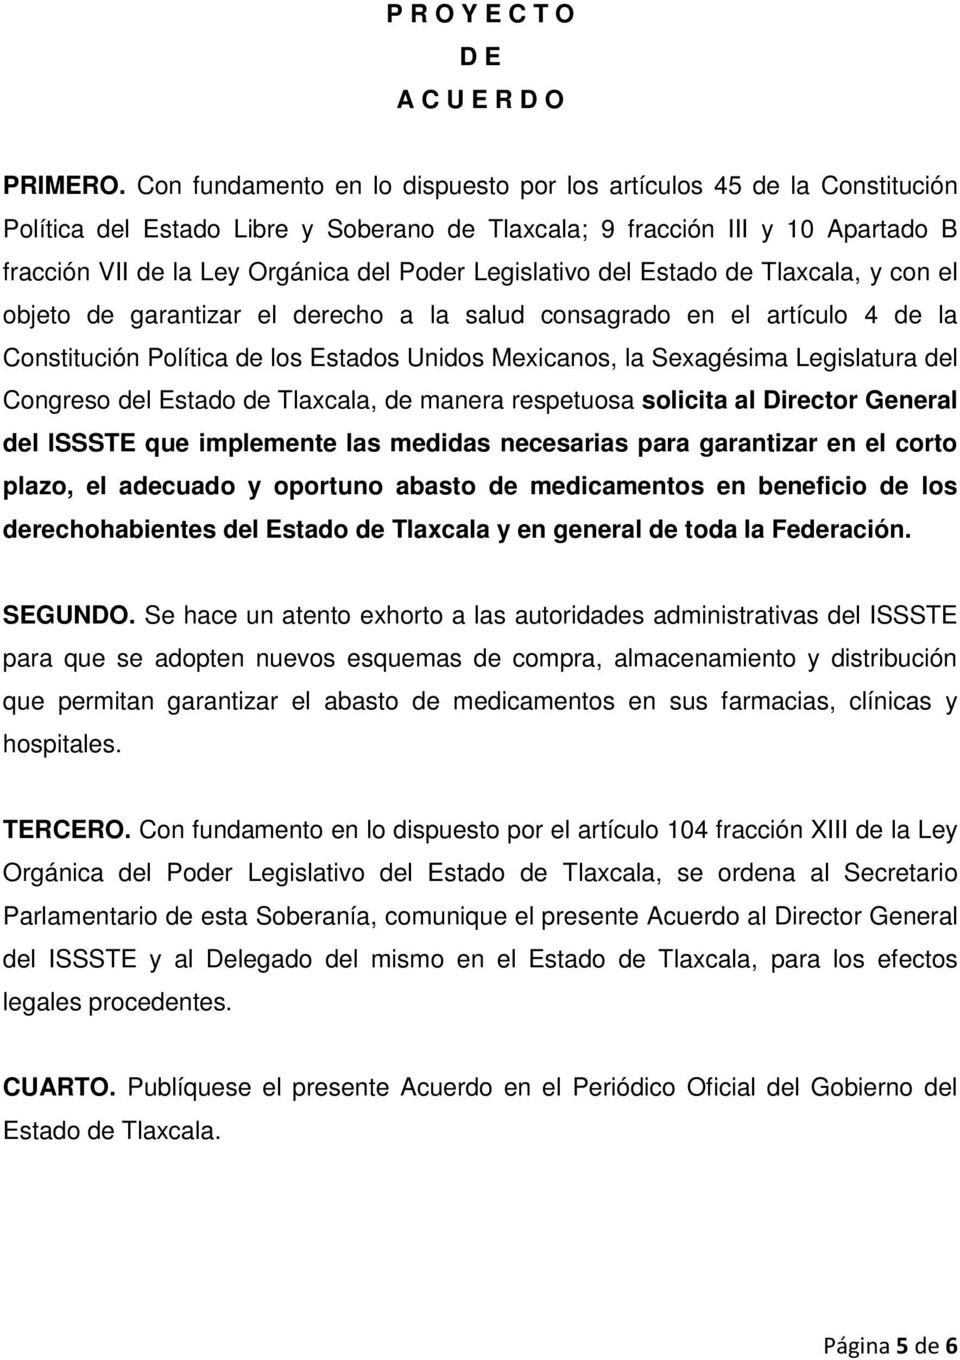 Legislativo del Estado de Tlaxcala, y con el objeto de garantizar el derecho a la salud consagrado en el artículo 4 de la Constitución Política de los Estados Unidos Mexicanos, la Sexagésima